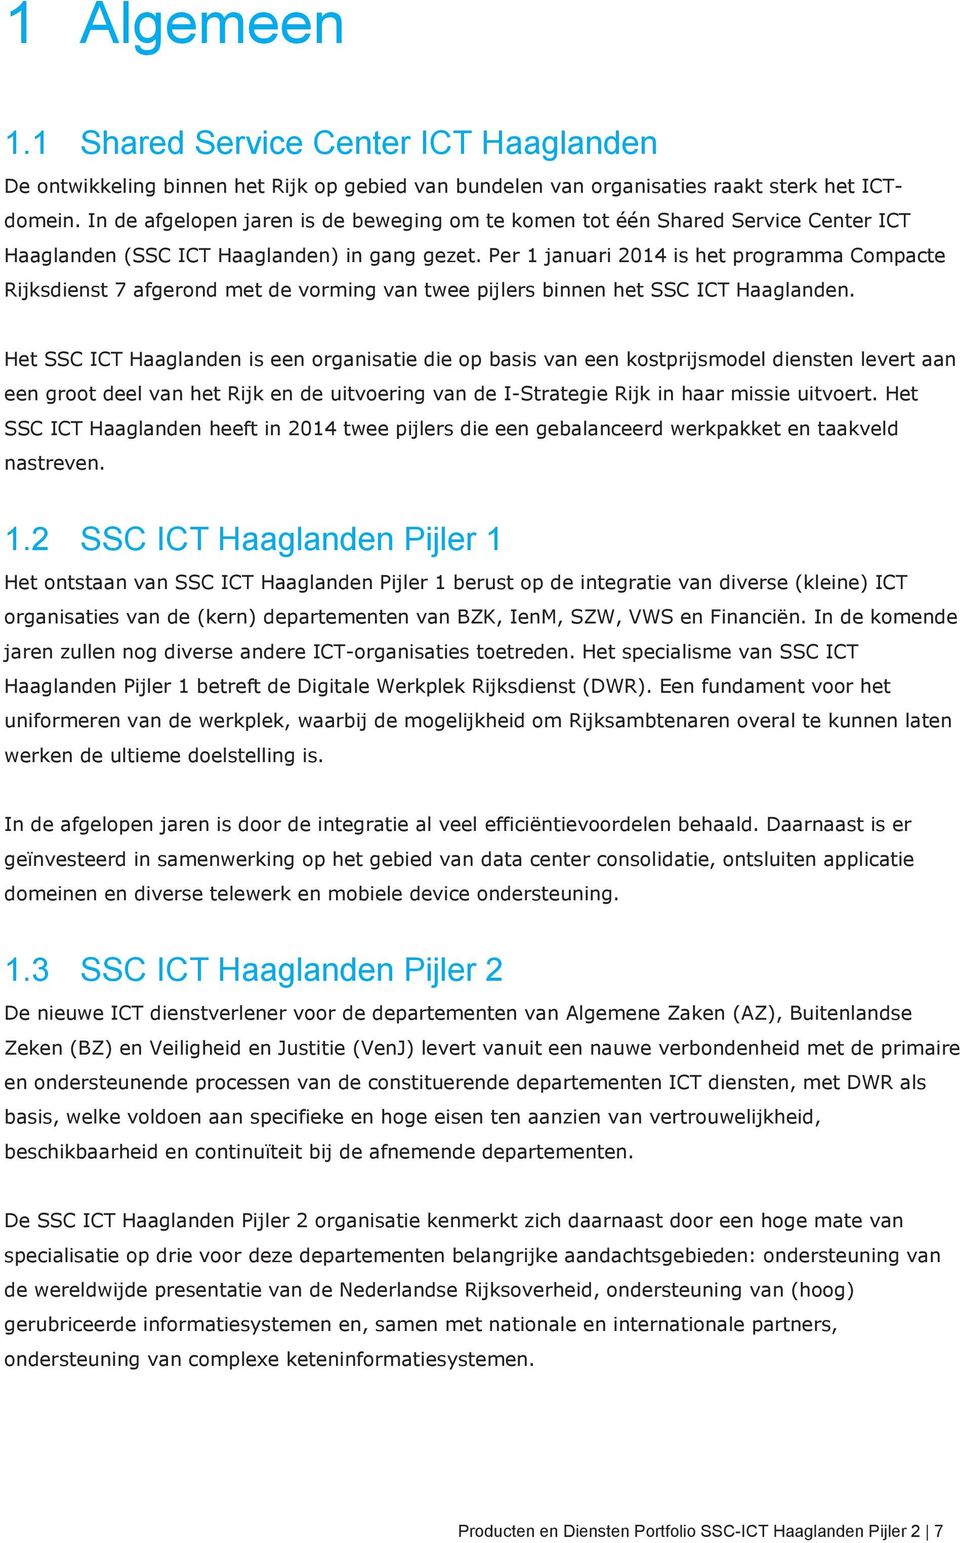 Per 1 januari 2014 is het programma Compacte Rijksdienst 7 afgerond met de vorming van twee pijlers binnen het SSC ICT Haaglanden.